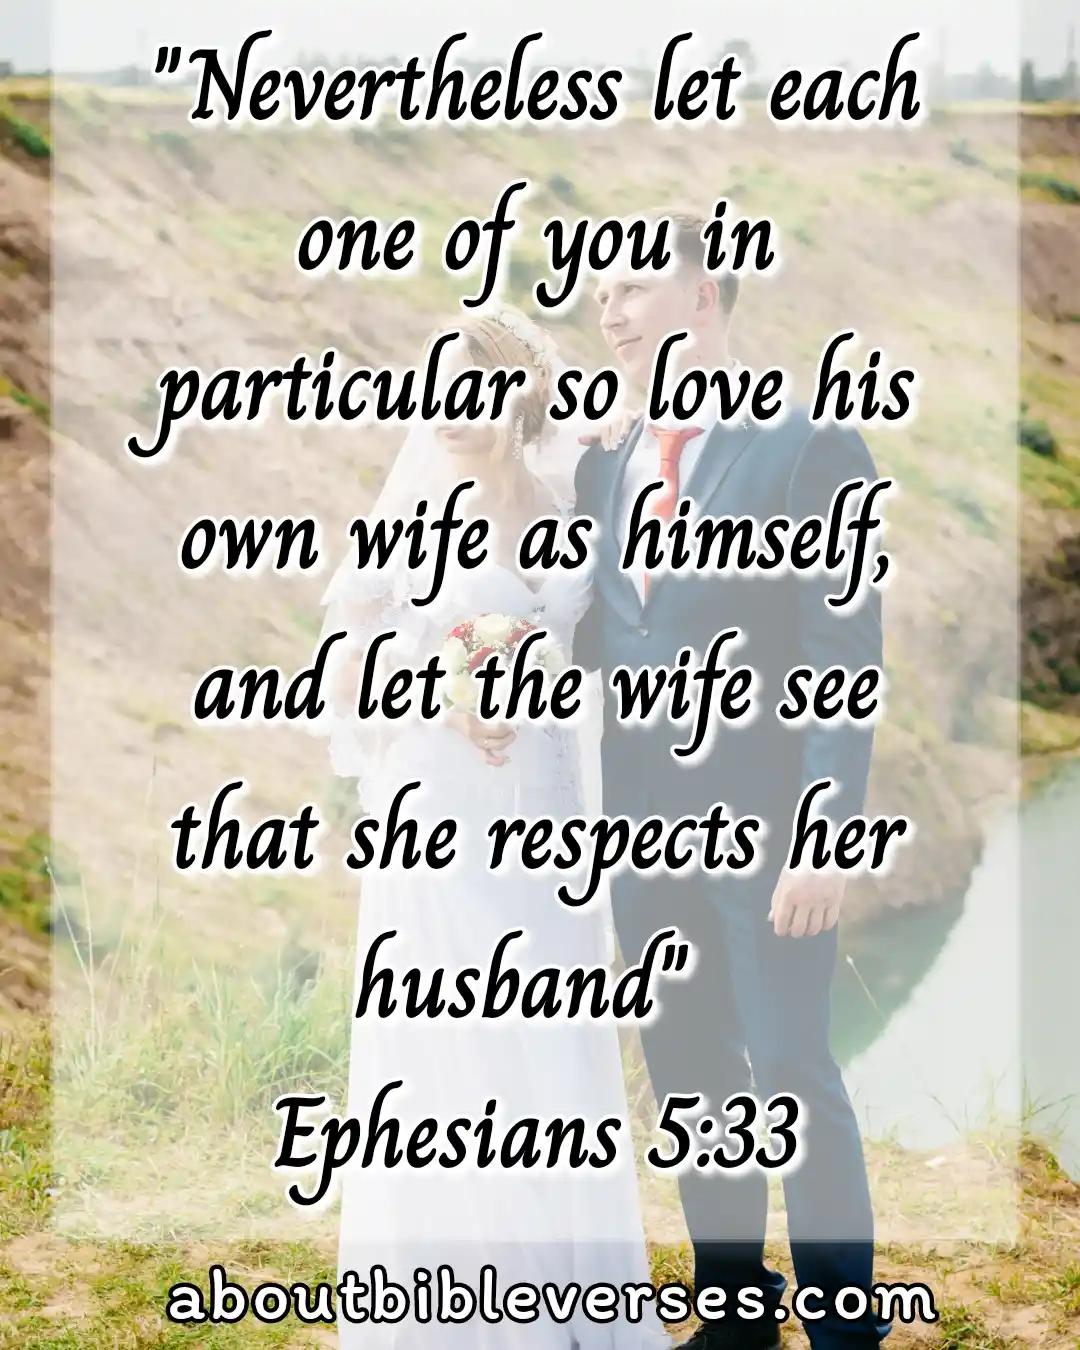 [Best] Más de 35 versículos bíblicos sobre un matrimonio saludable